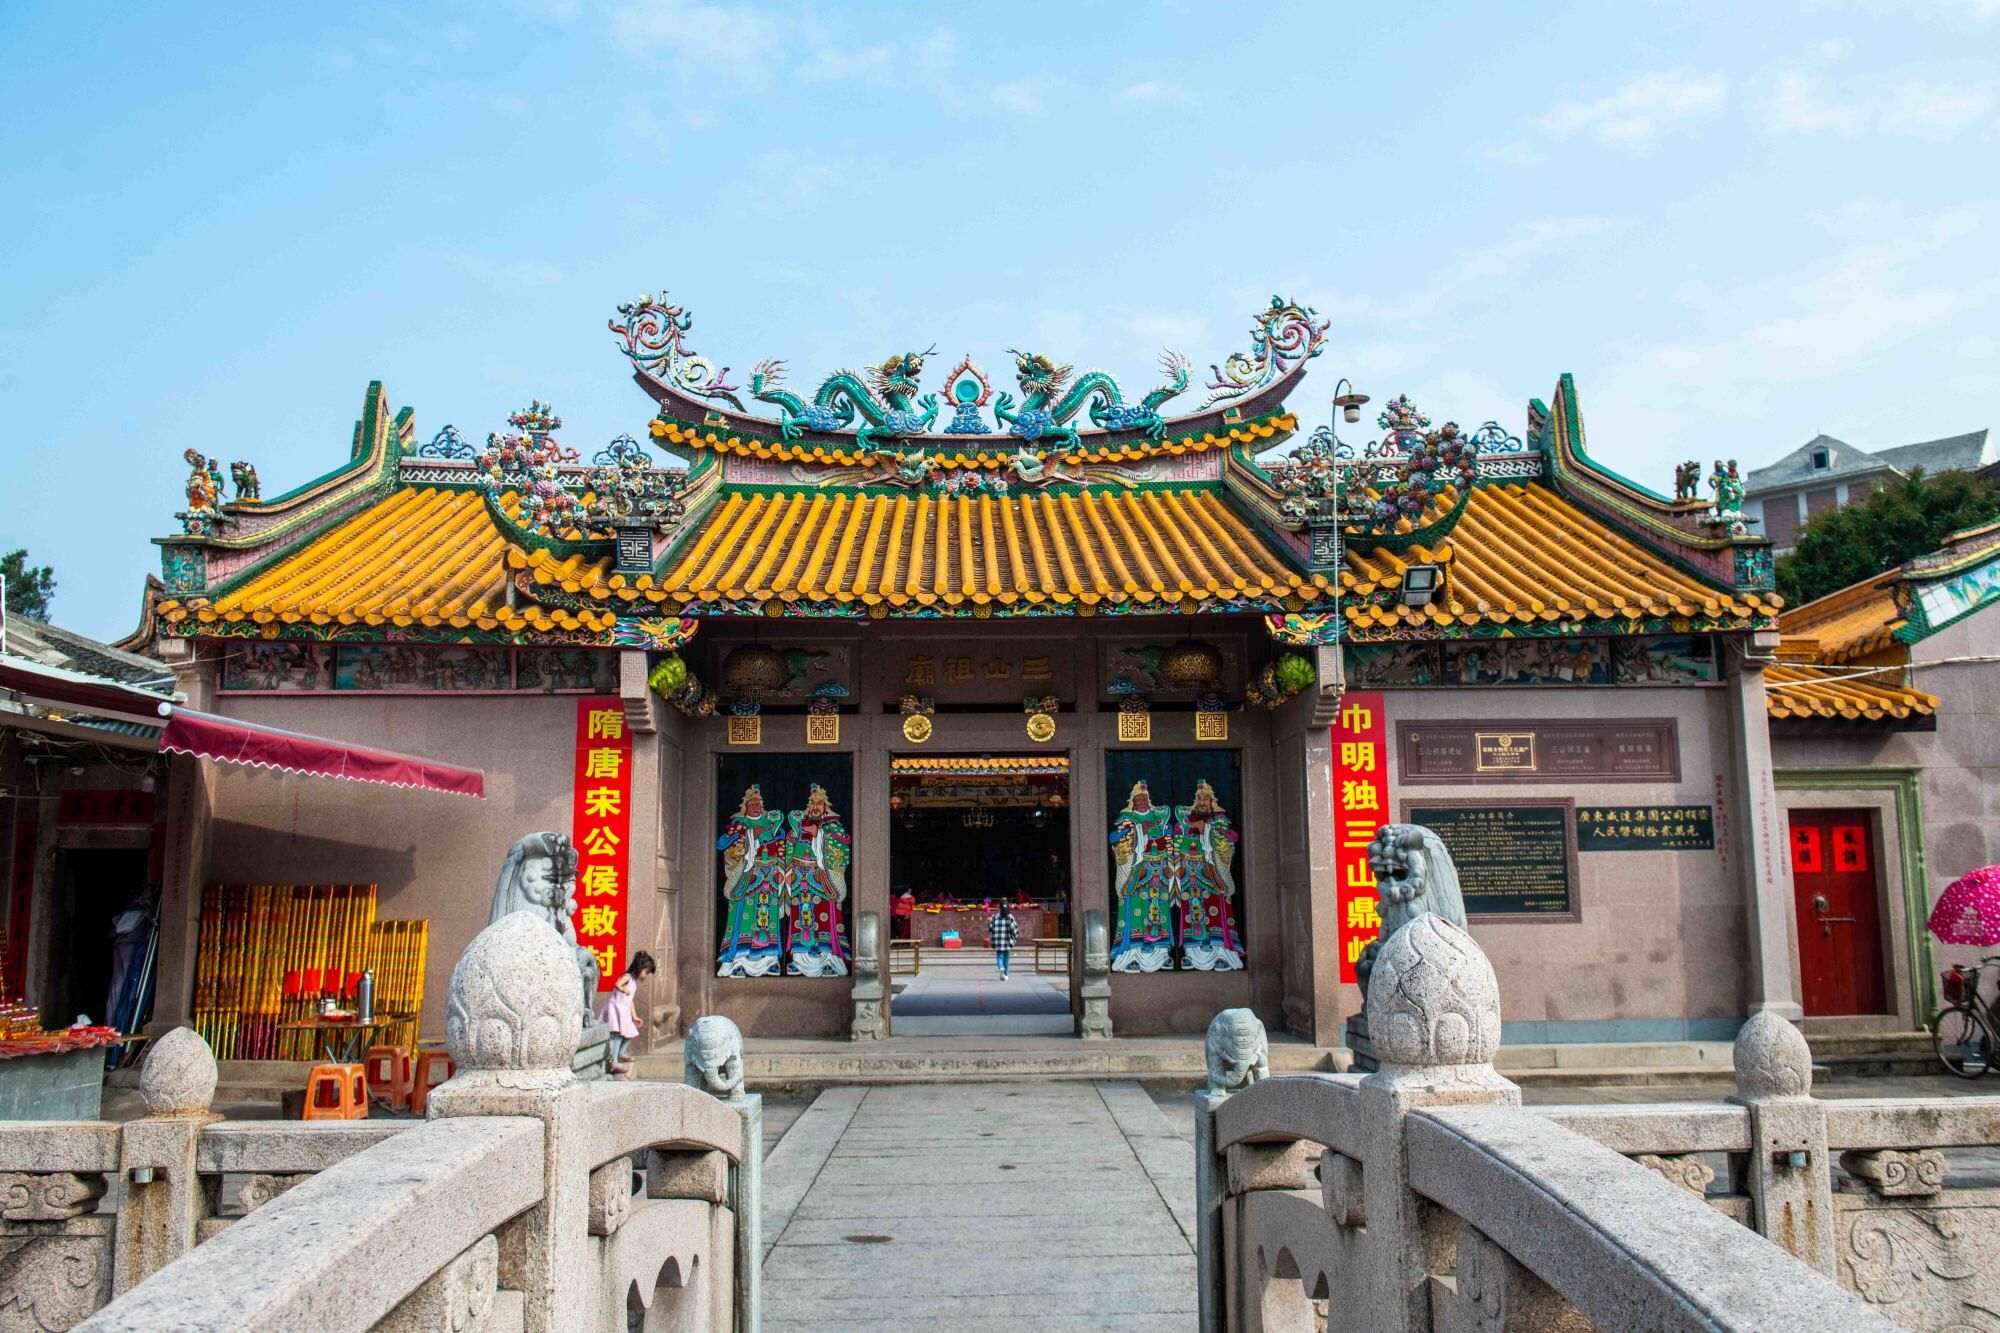 三山国王庙坐落于广东省揭西县良田乡河水村玉峰山下,又称为明贶庙